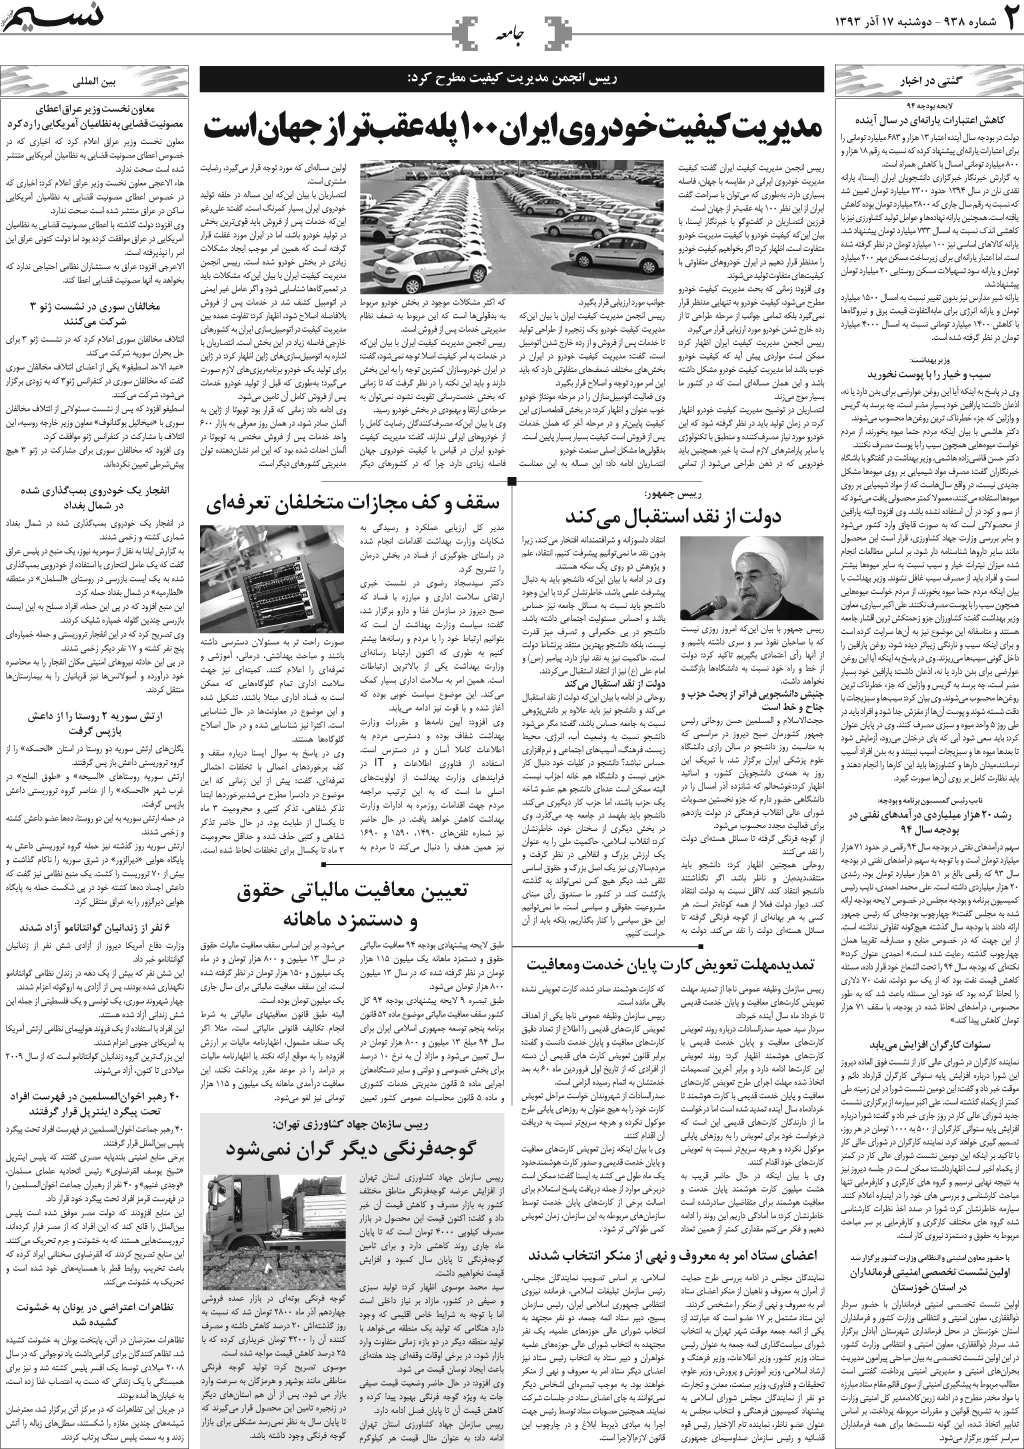 صفحه جامعه روزنامه نسیم شماره 938